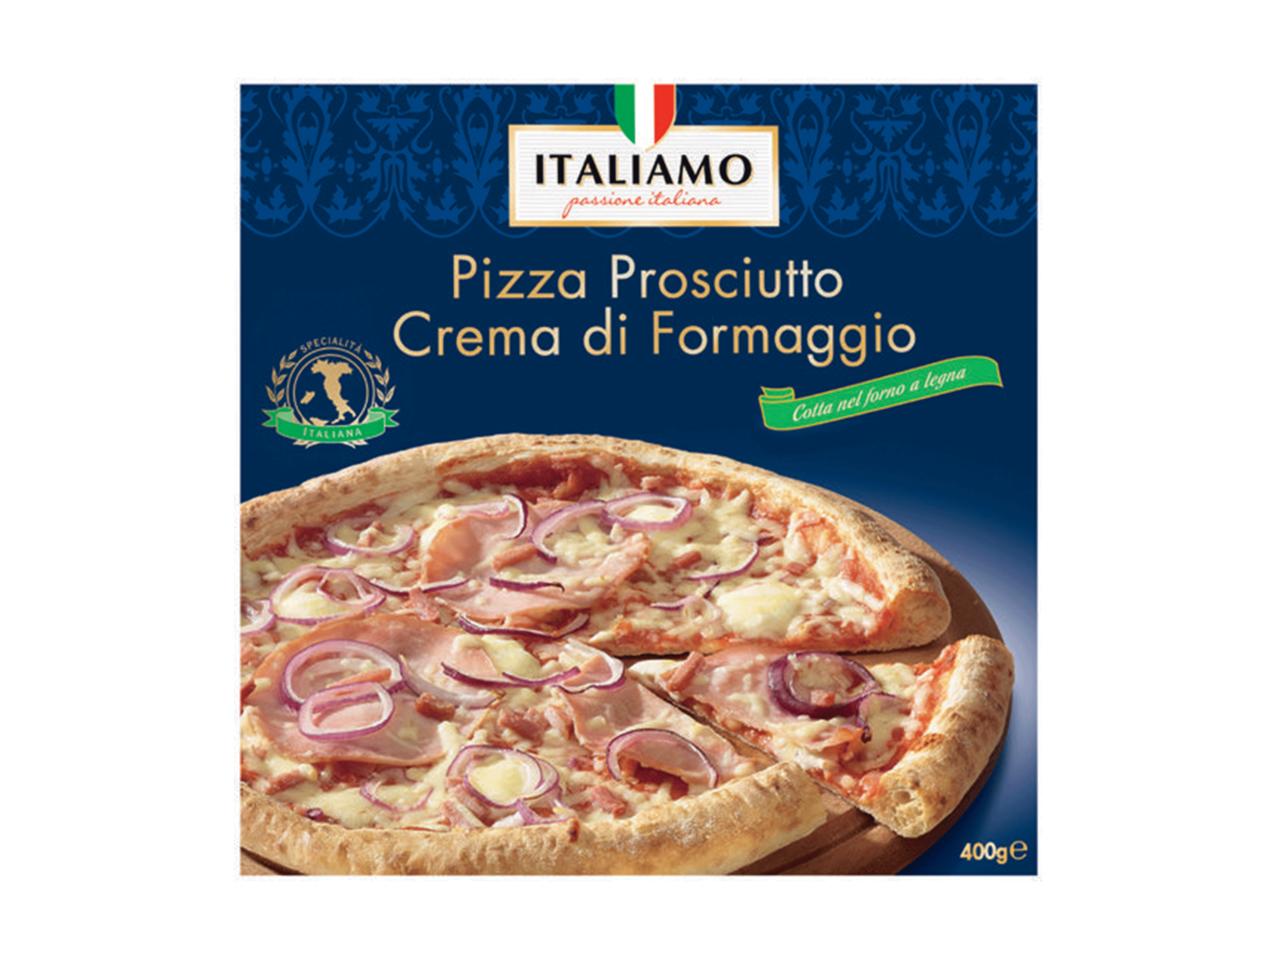 ITALIAMO Stonebaked Pizza Quattro Formaggi/Prosciutto Crema di Formaggio